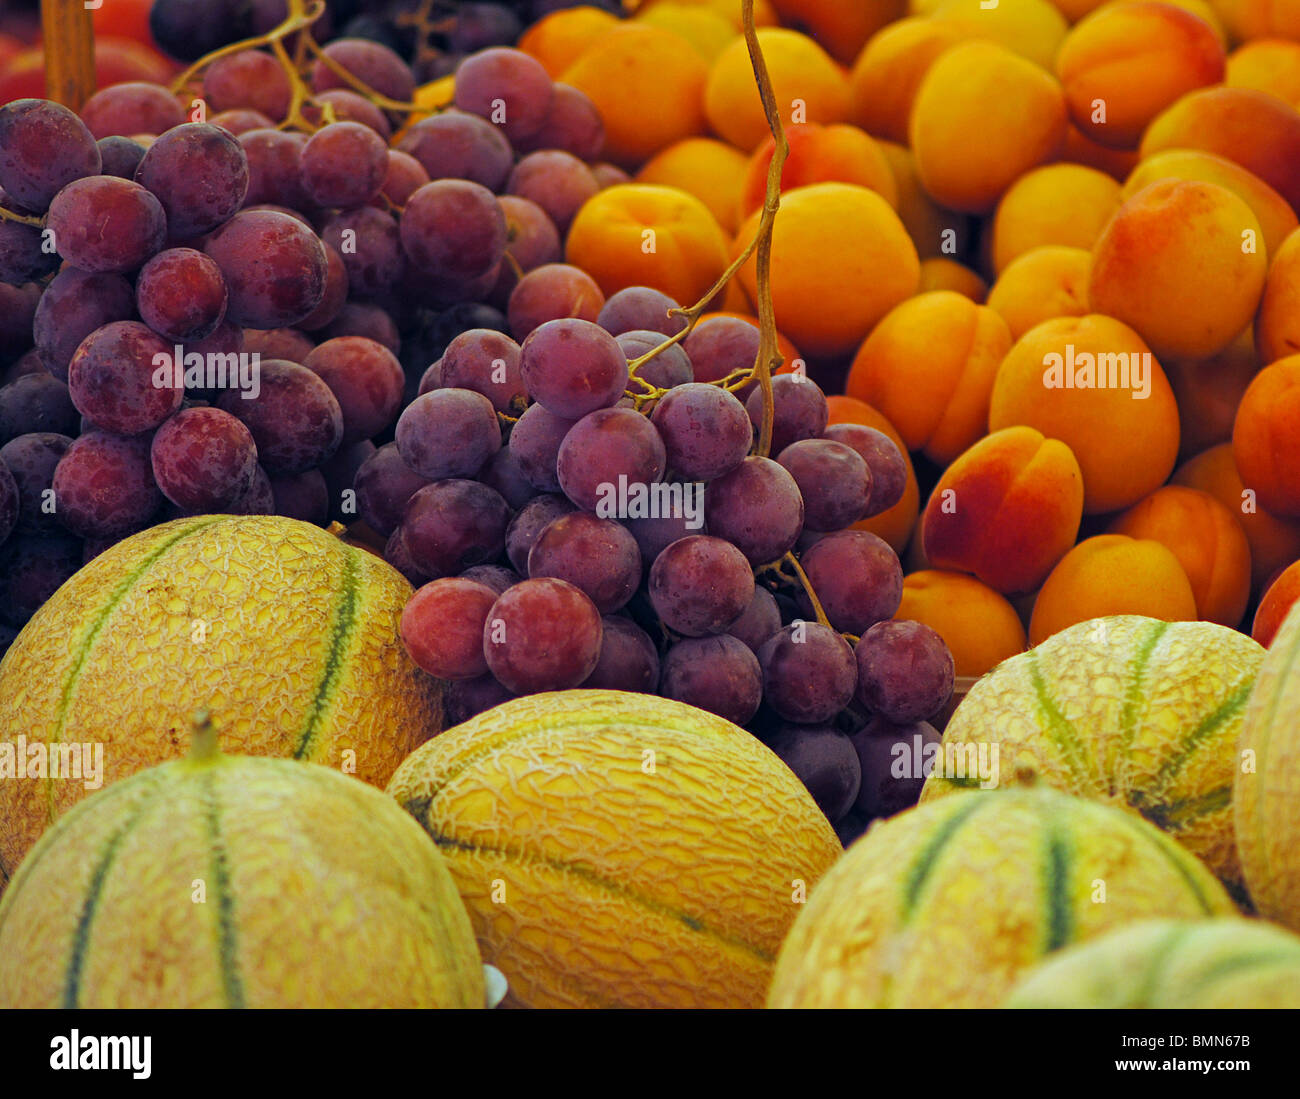 Les melons, les raisins et les abricots dans un marché à Venise, Italie Banque D'Images